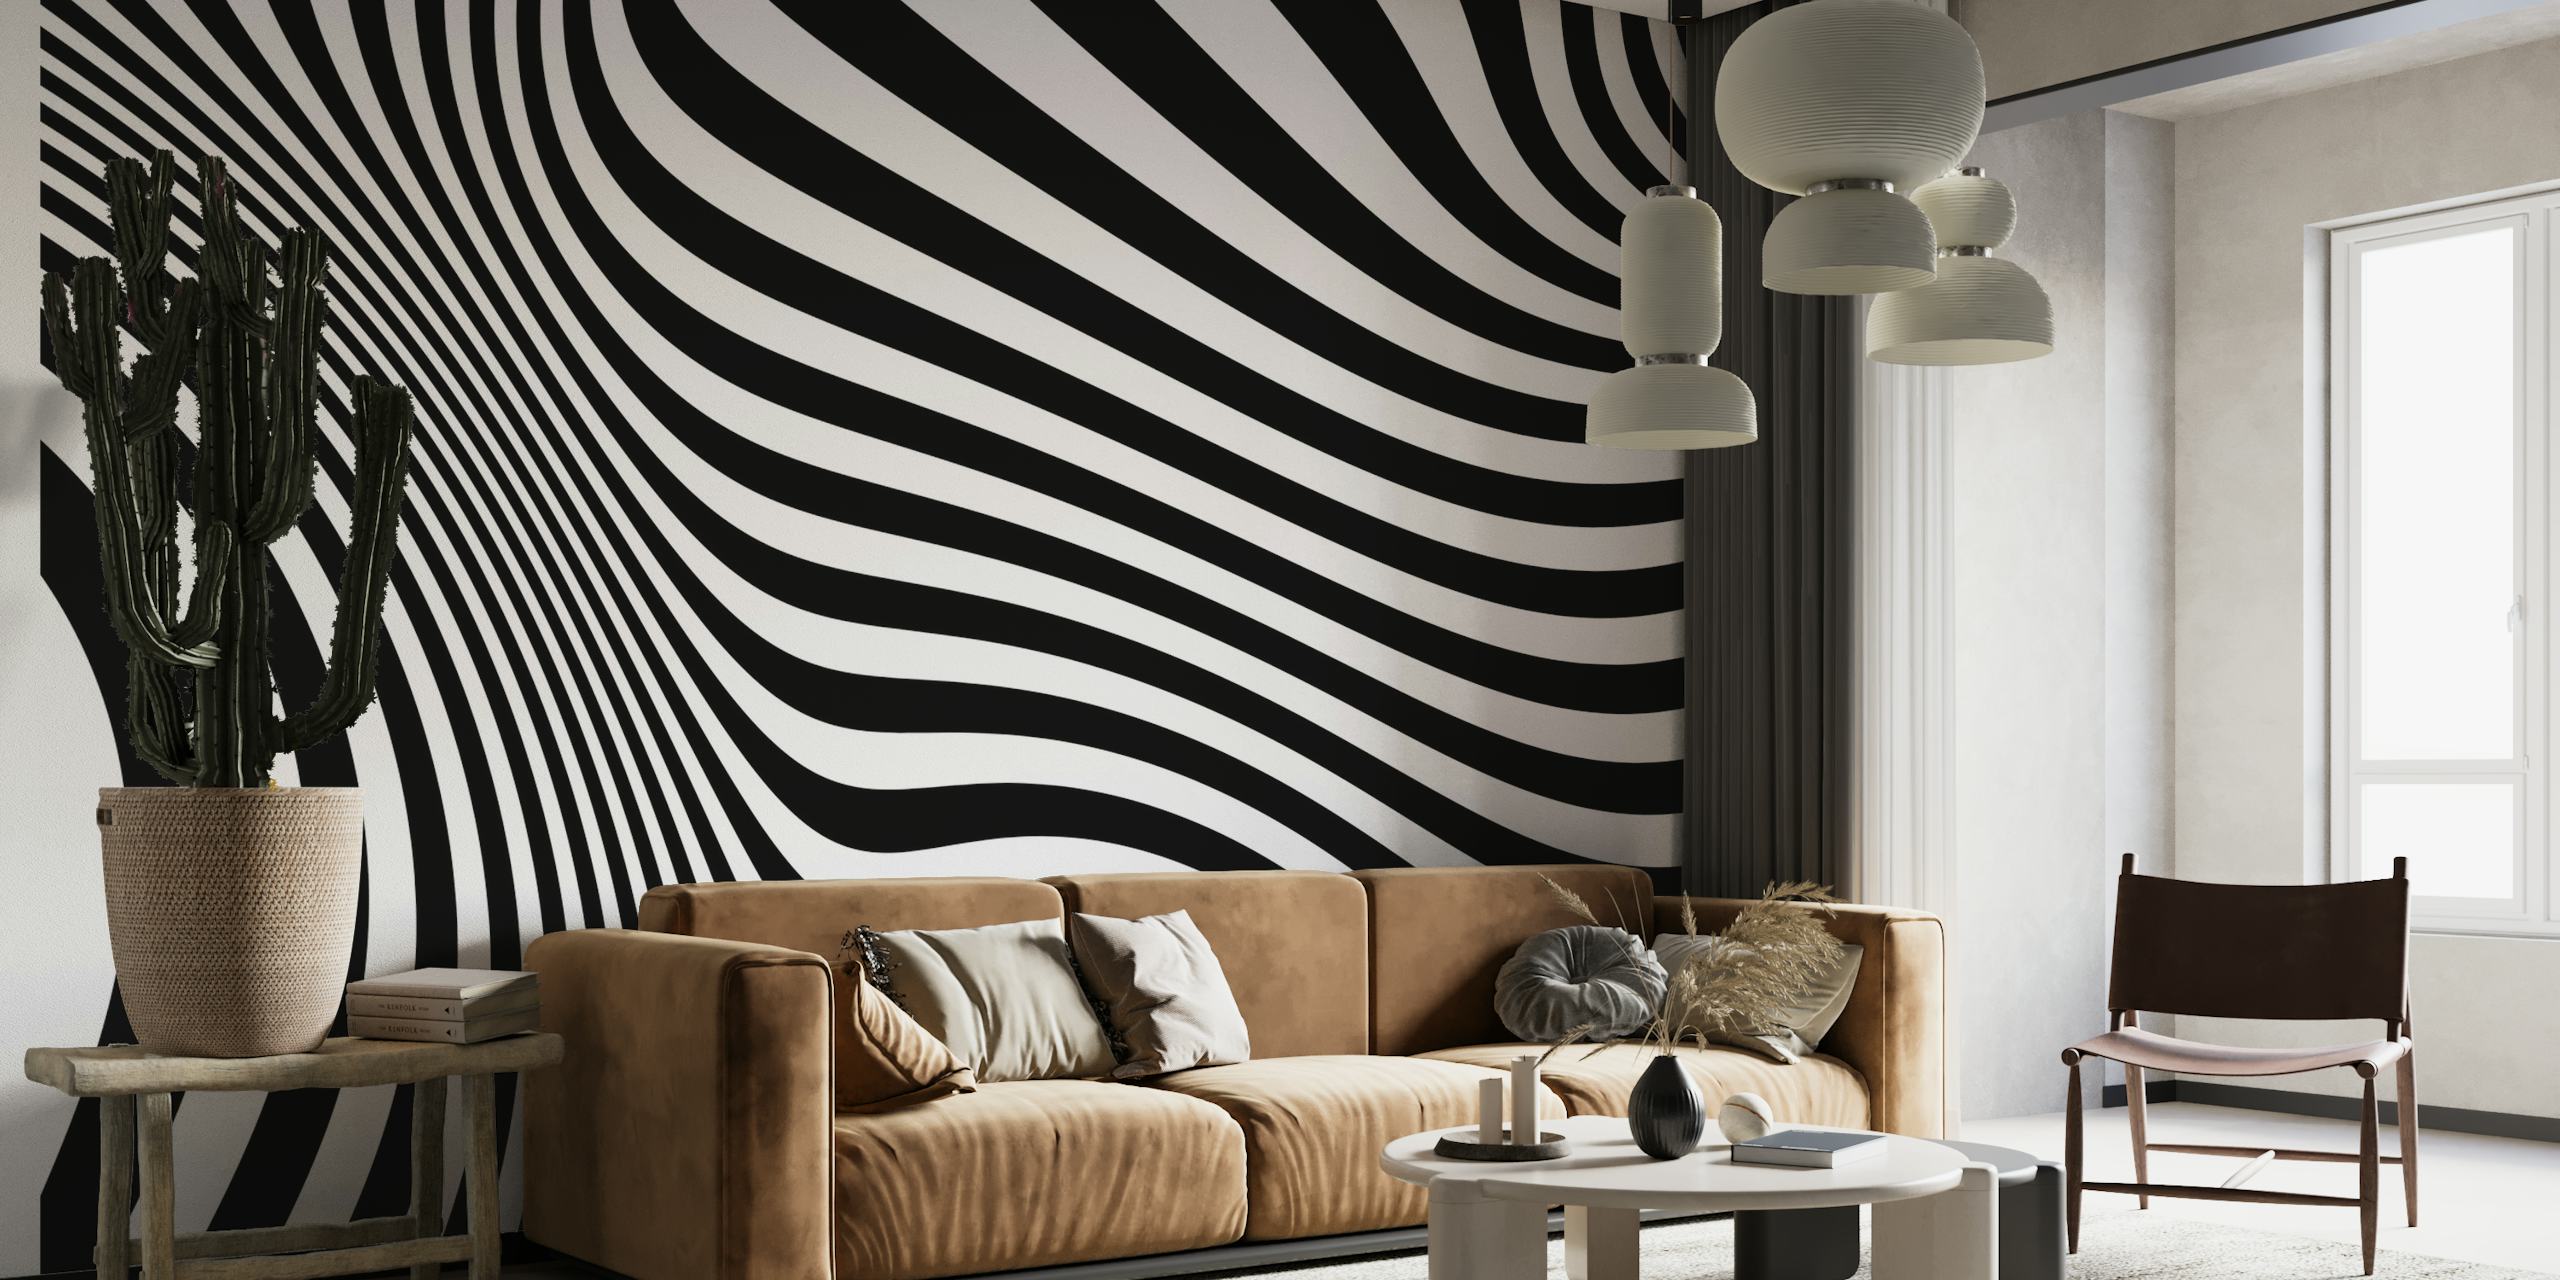 Mural de parede Op Art Retro em preto e branco com linhas hipnóticas